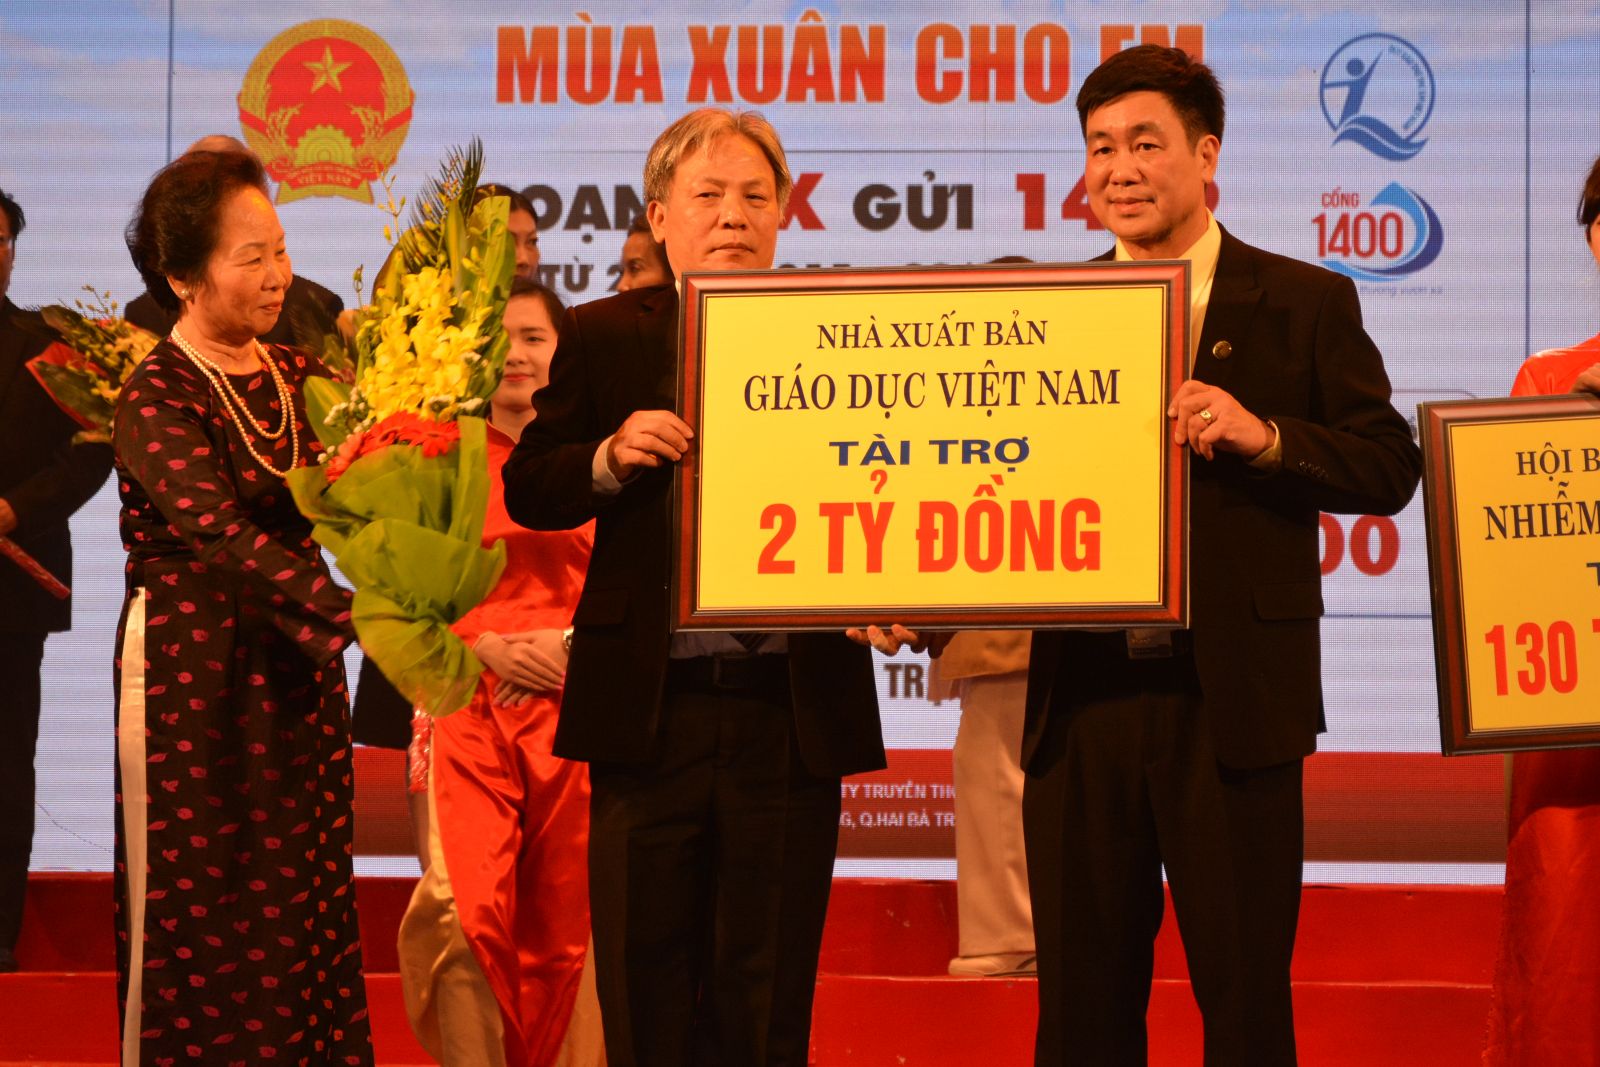 NXB Giáo dục Việt Nam ủng hộ Quỹ bảo trợ trẻ em Việt Nam 2 tỷ đồng